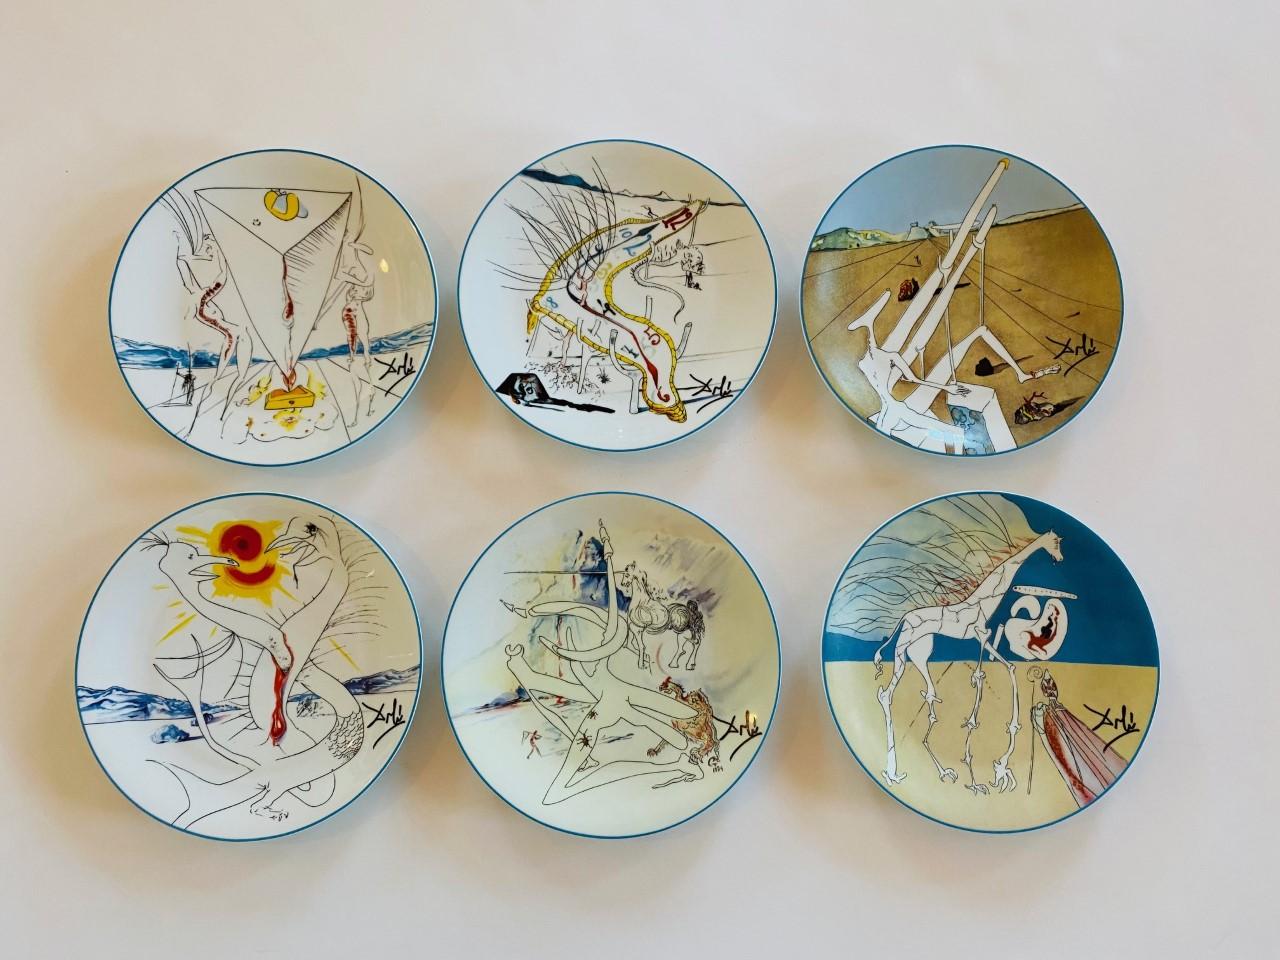 Porzellan-Unikate aus Limoges, Frankreich. Diese einzigartige und seltene Sammlung von Limoges bringt das Werk von Salvador Dali mit 6 verschiedenen Werken auf jedem der Teller. Diese Sammlung stammt aus den frühen 80er Jahren. Jedes Stück ist